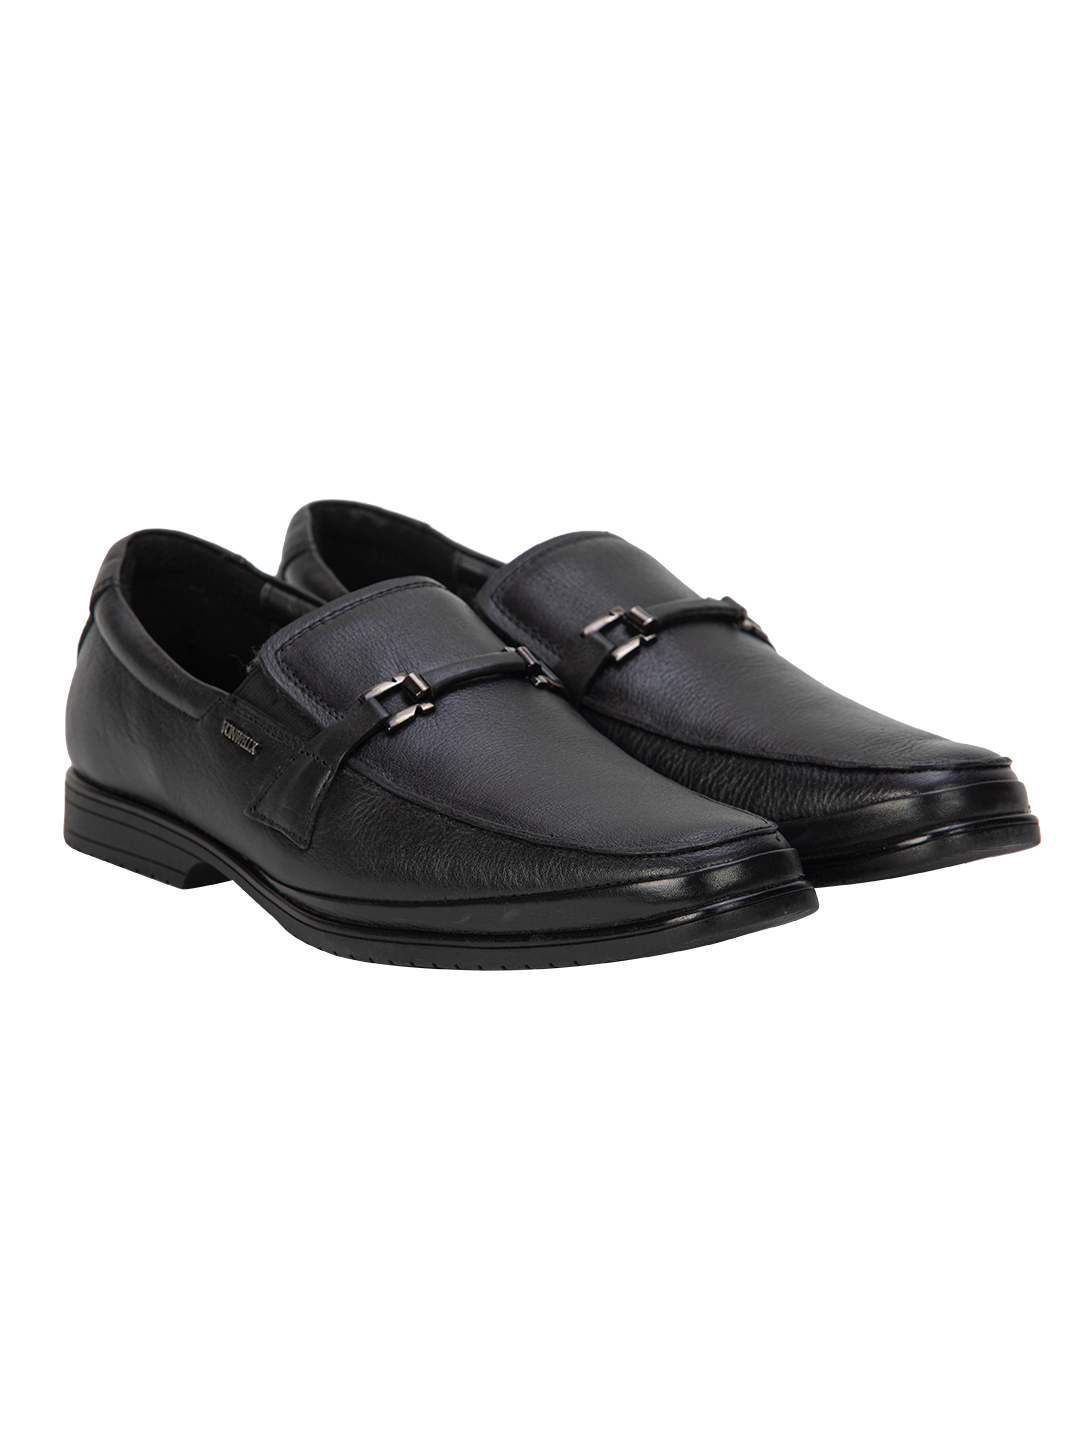 Buy Von Wellx Germany Comfort Black Jace Shoes Online in Vadodara